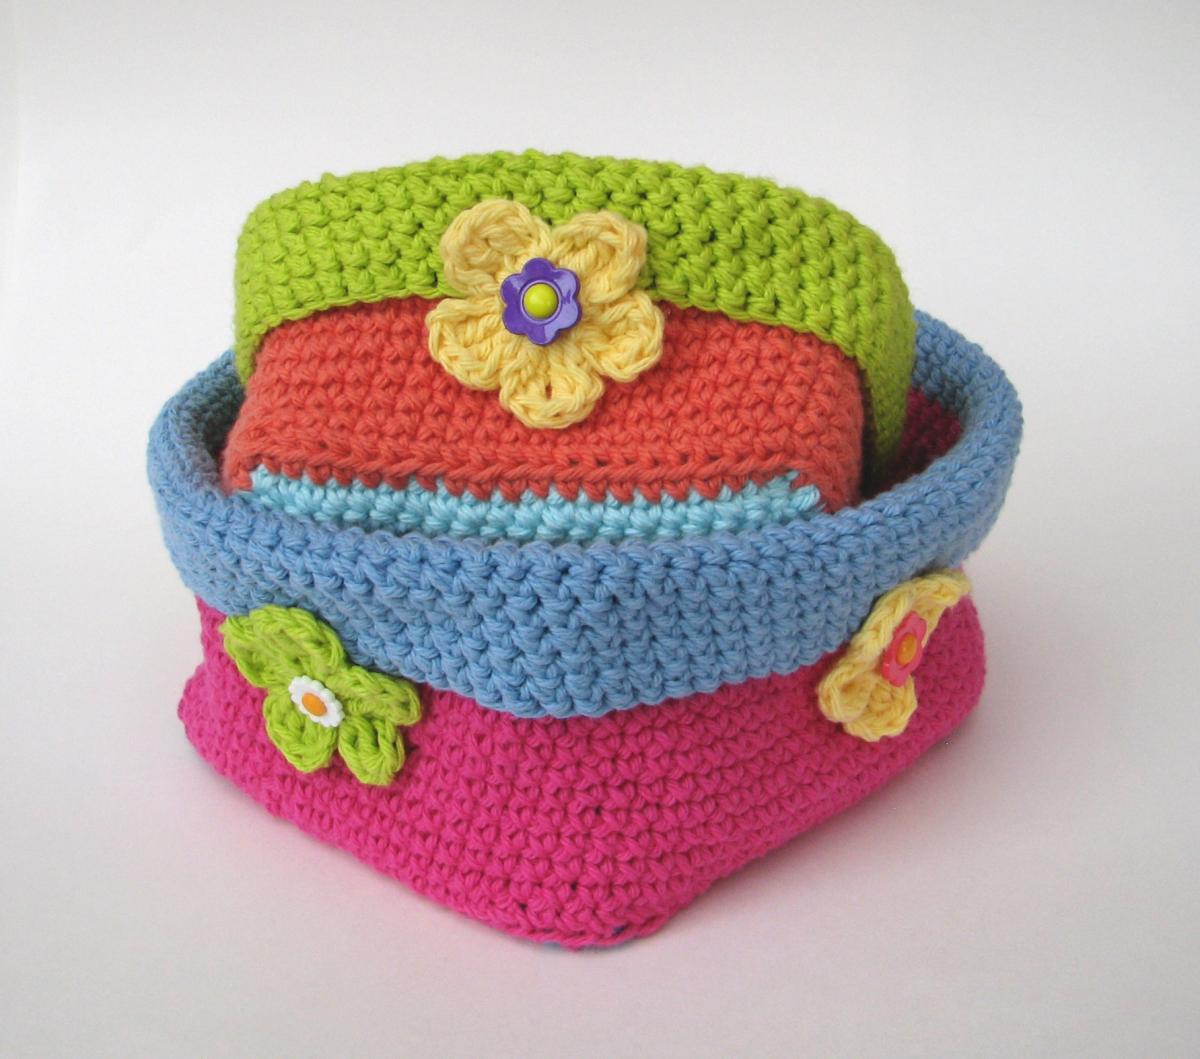 Crochet Square Basket - 2 Sizes, Crochet Pattern, Easy, Crochet Pattern Pdf, Great For Beginners, Pattern No. 58